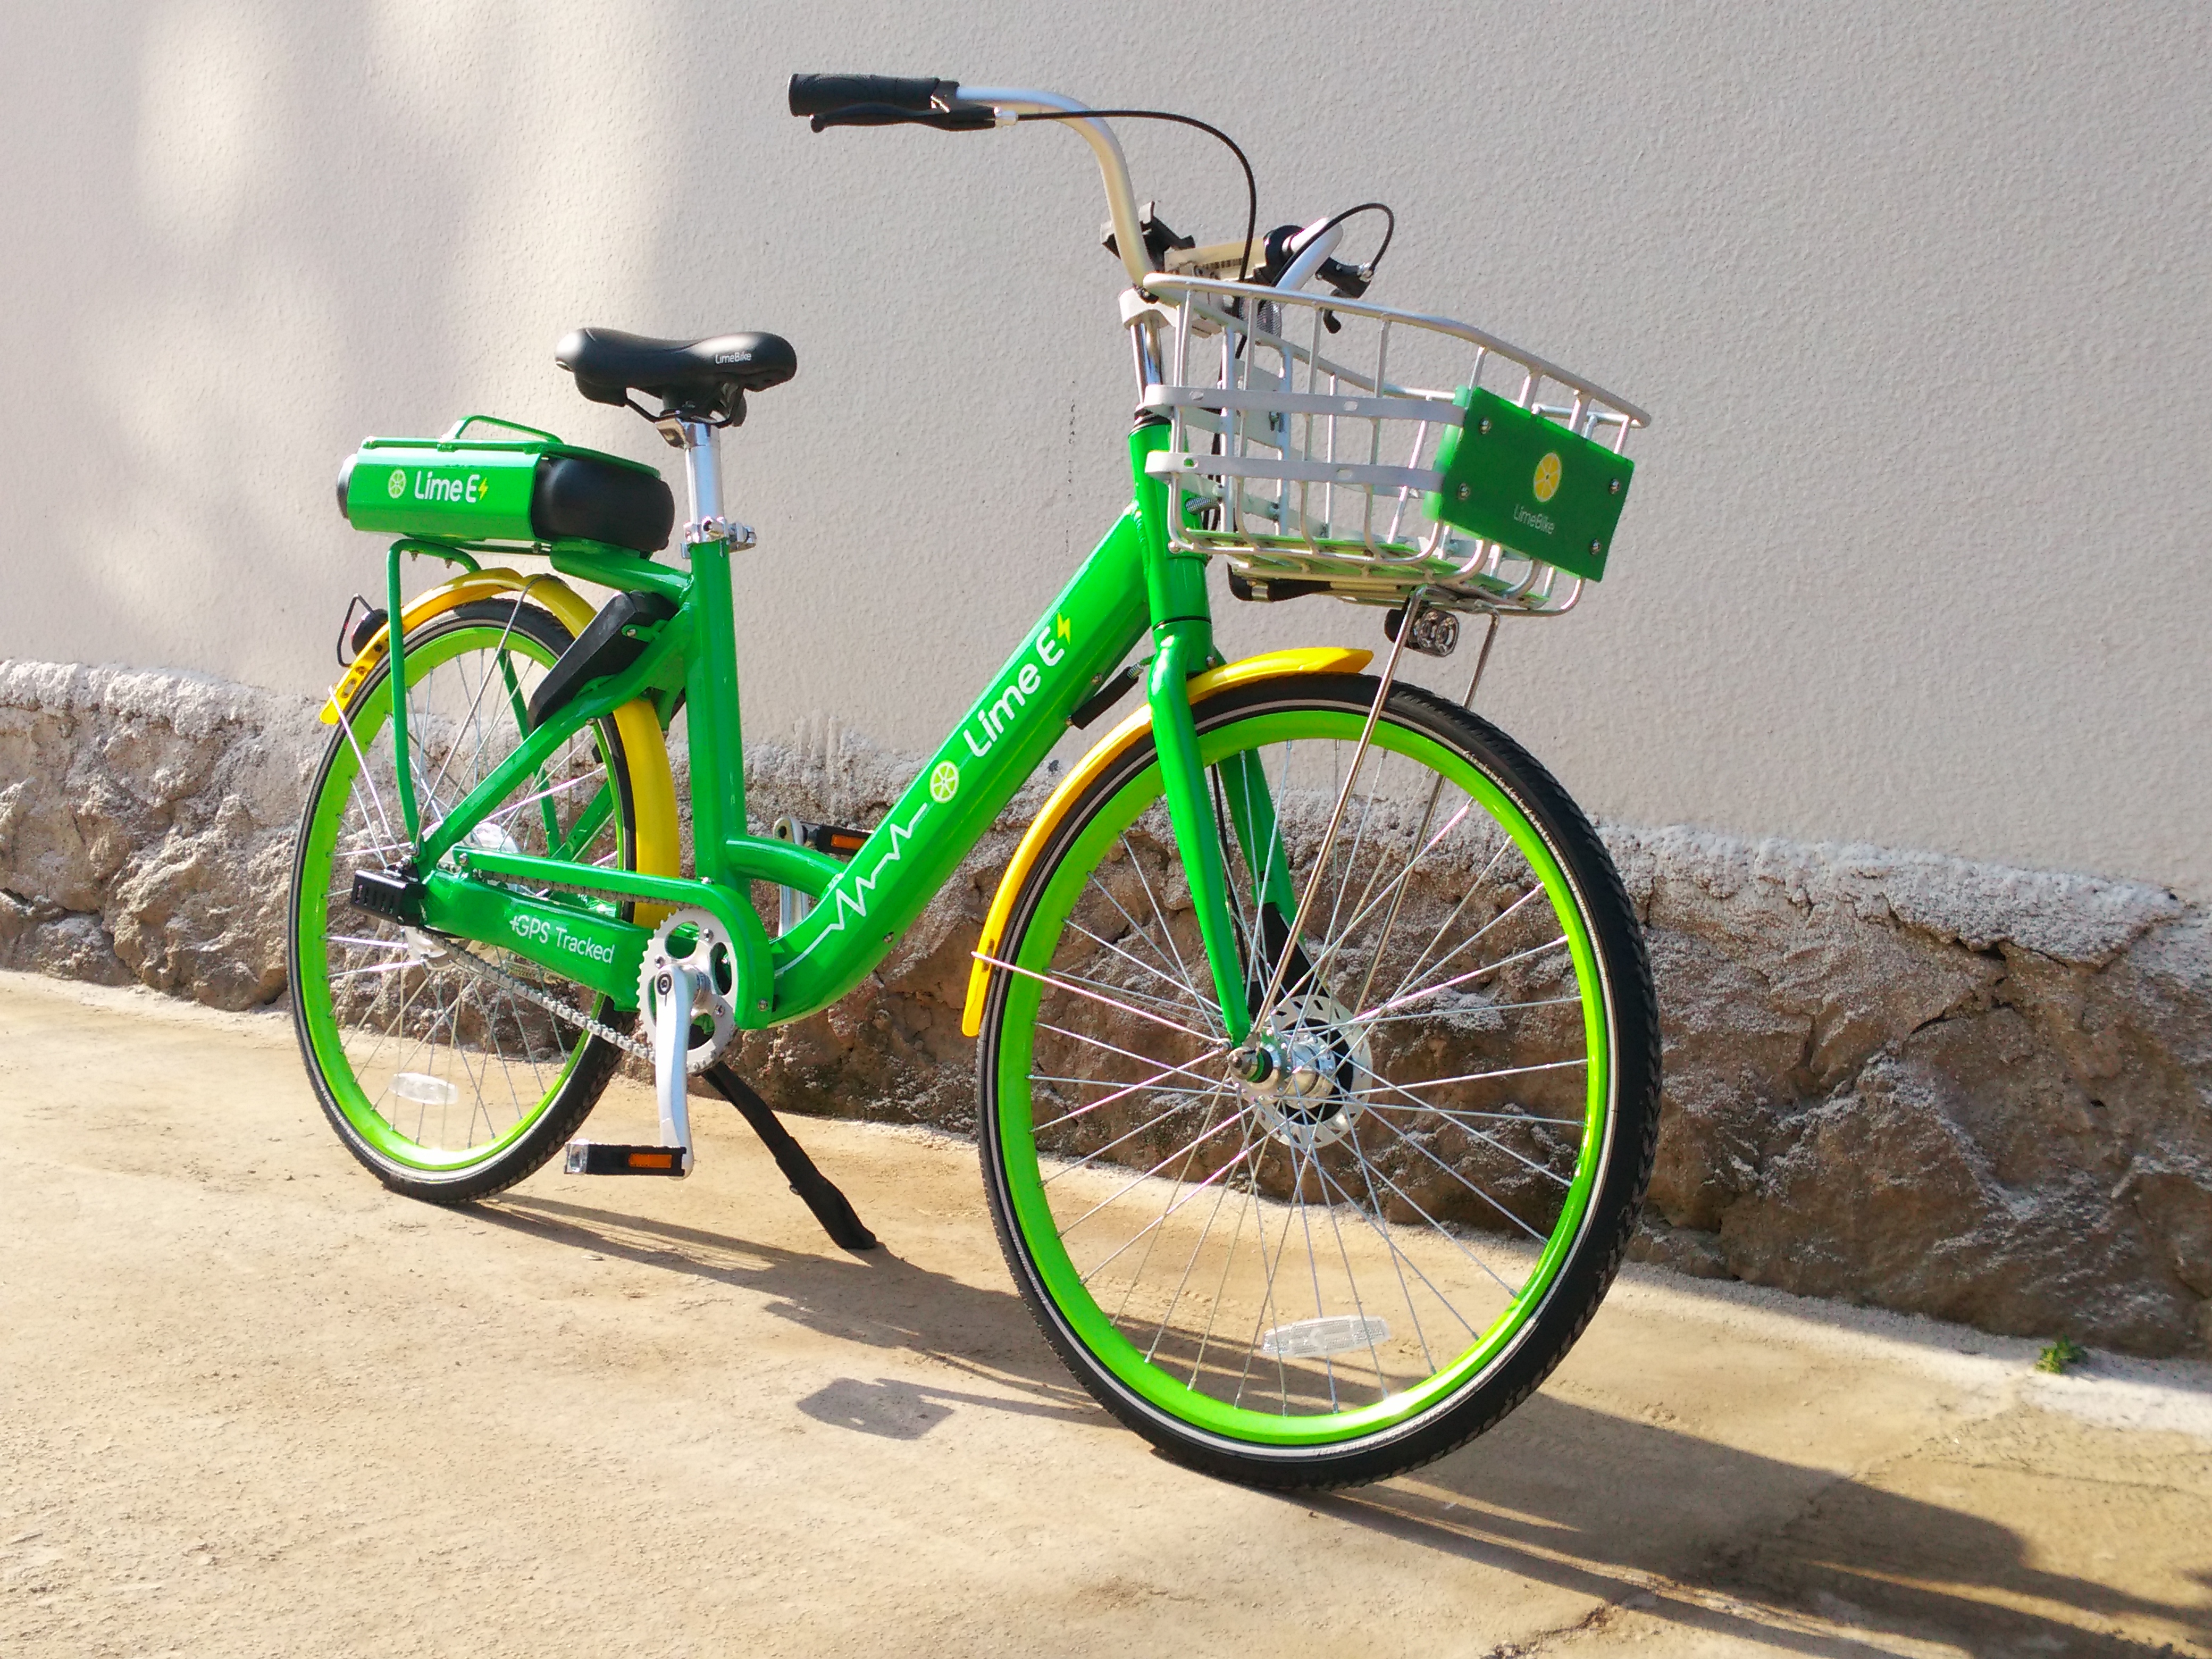 electric lime bike